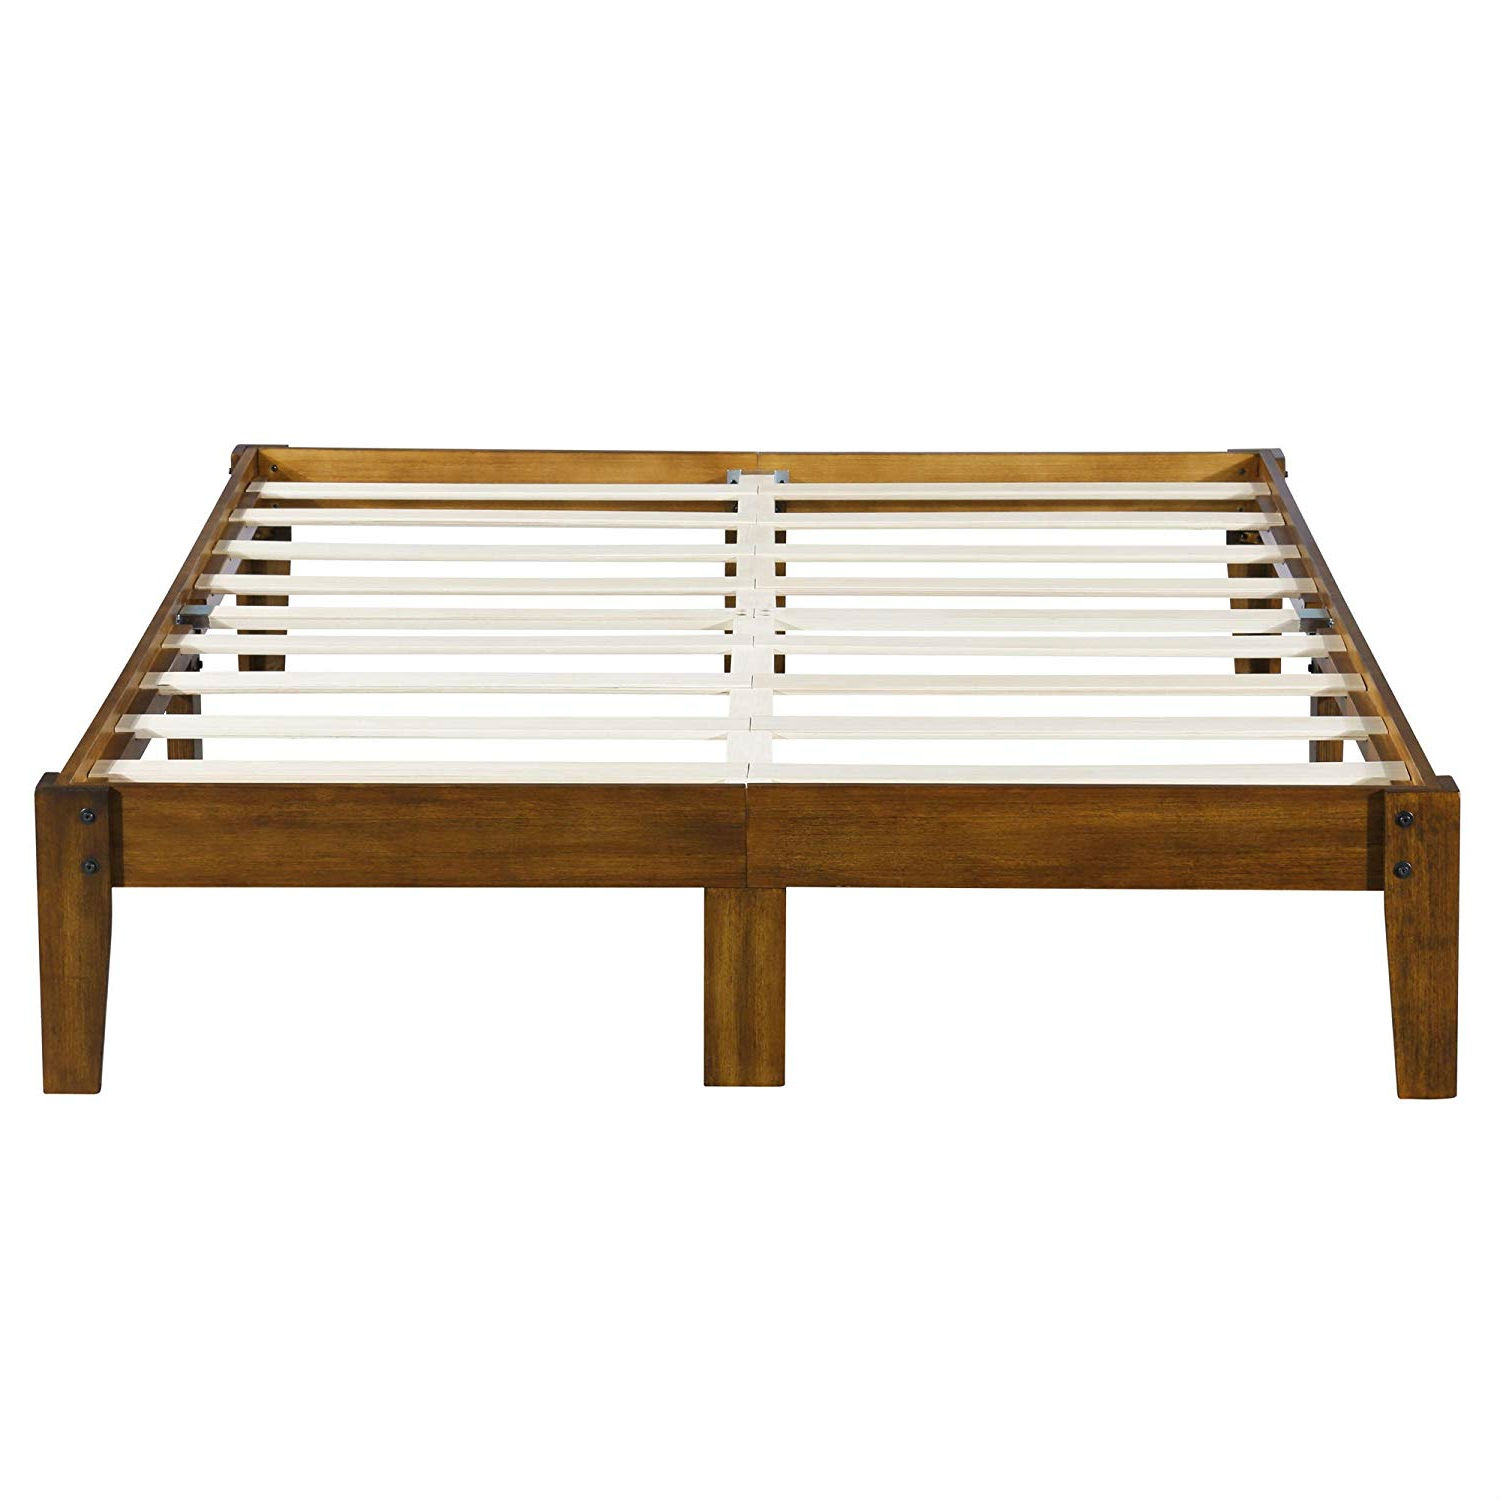 King size Solid Wood Platform Bed Frame in Brown Natural Finish